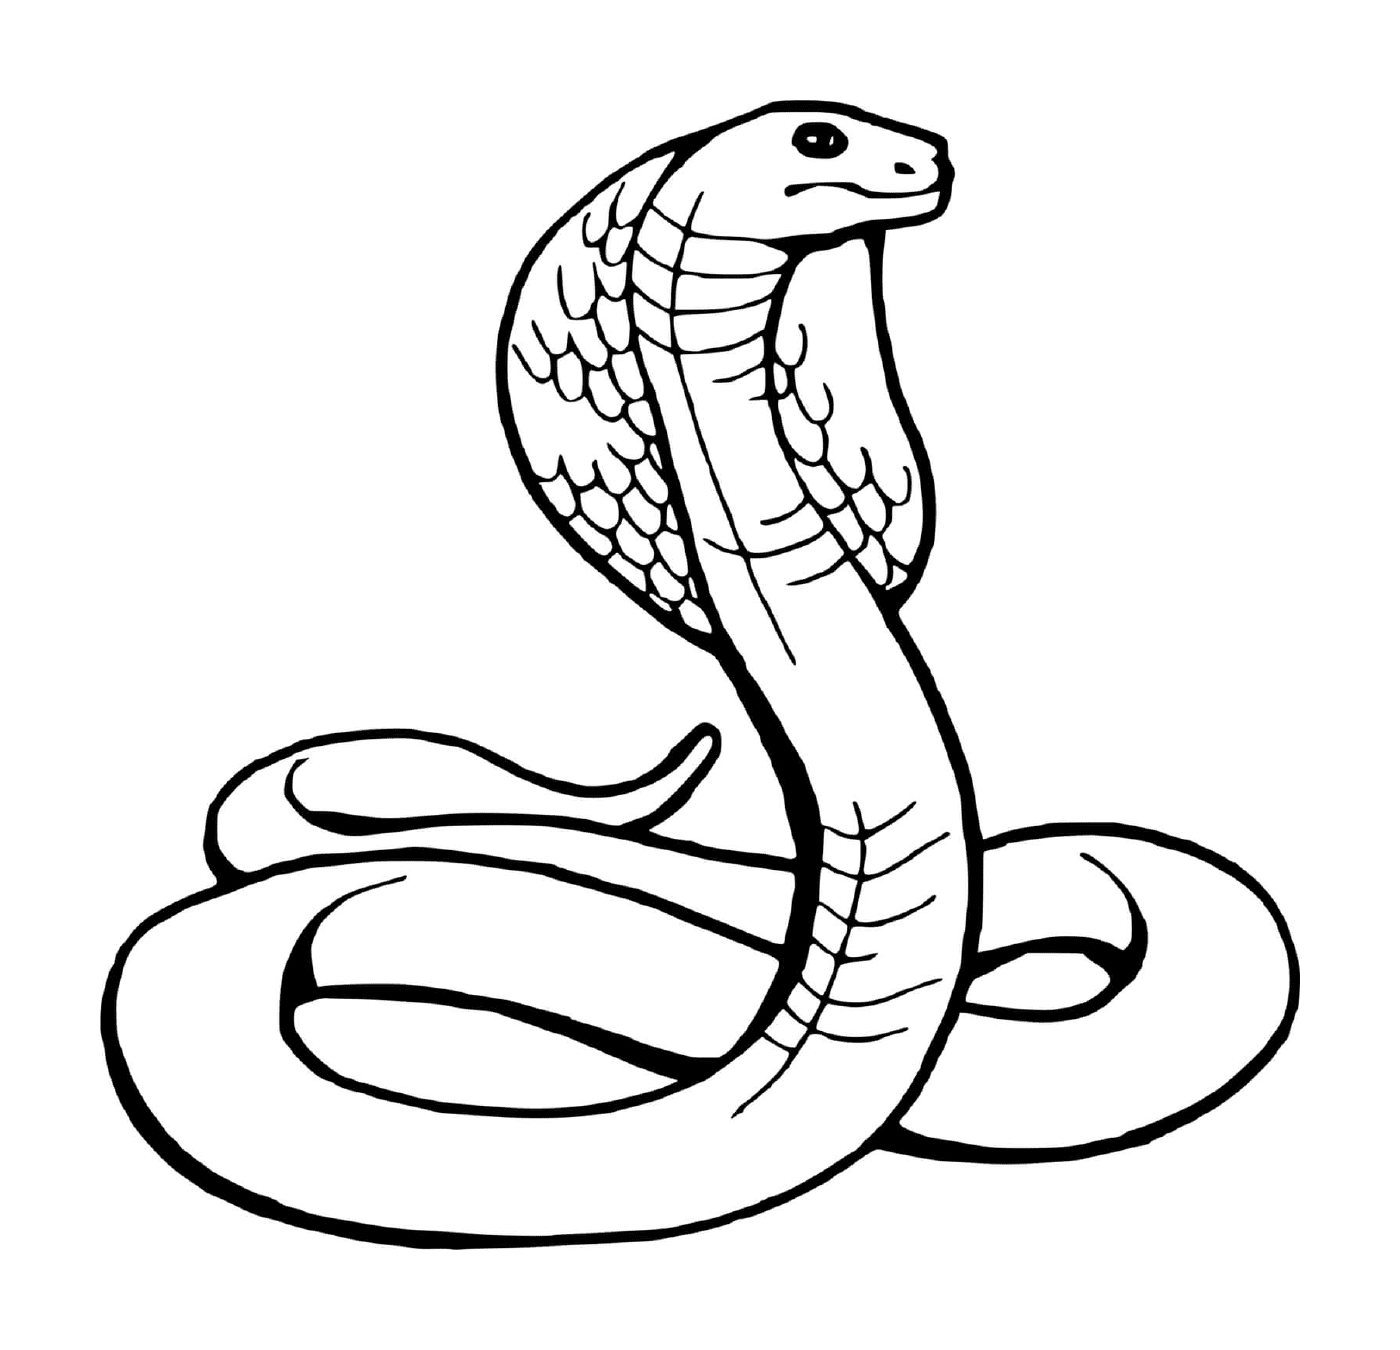  Serpente, serpente 